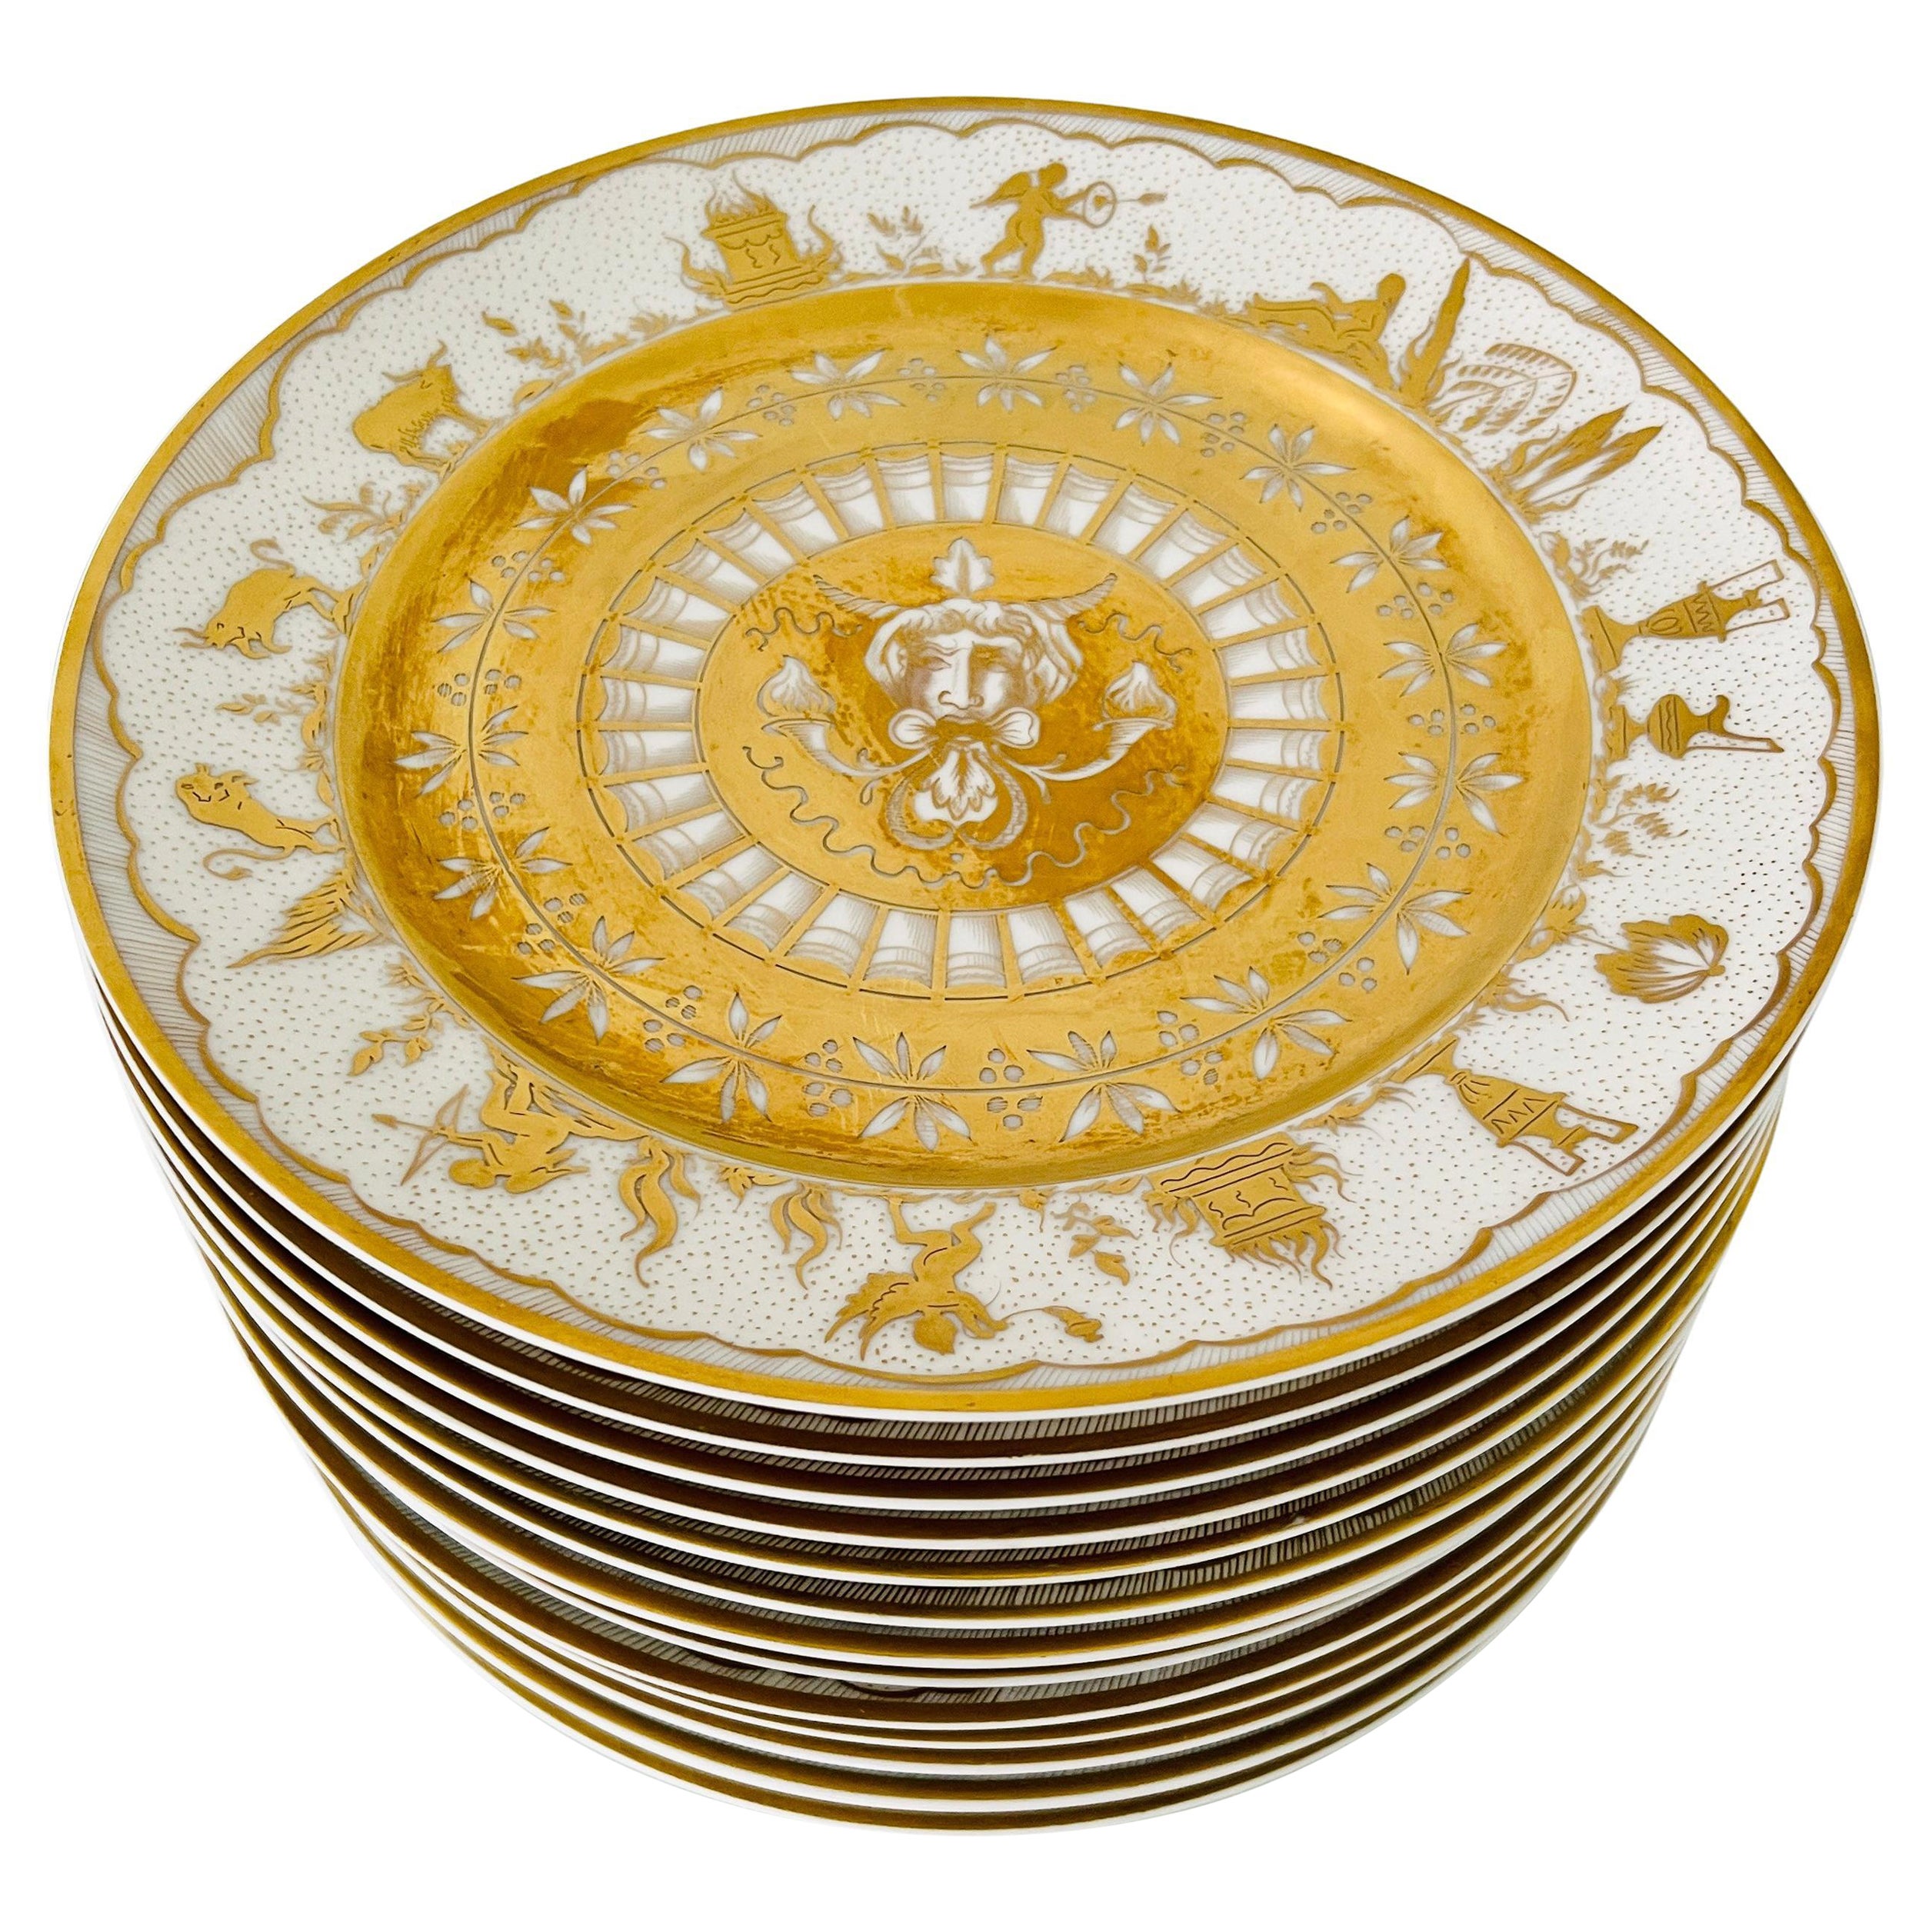 Lot de 14 assiettes en porcelaine Le Tallec peintes à la main avec motifs de mythologie grecque en or 